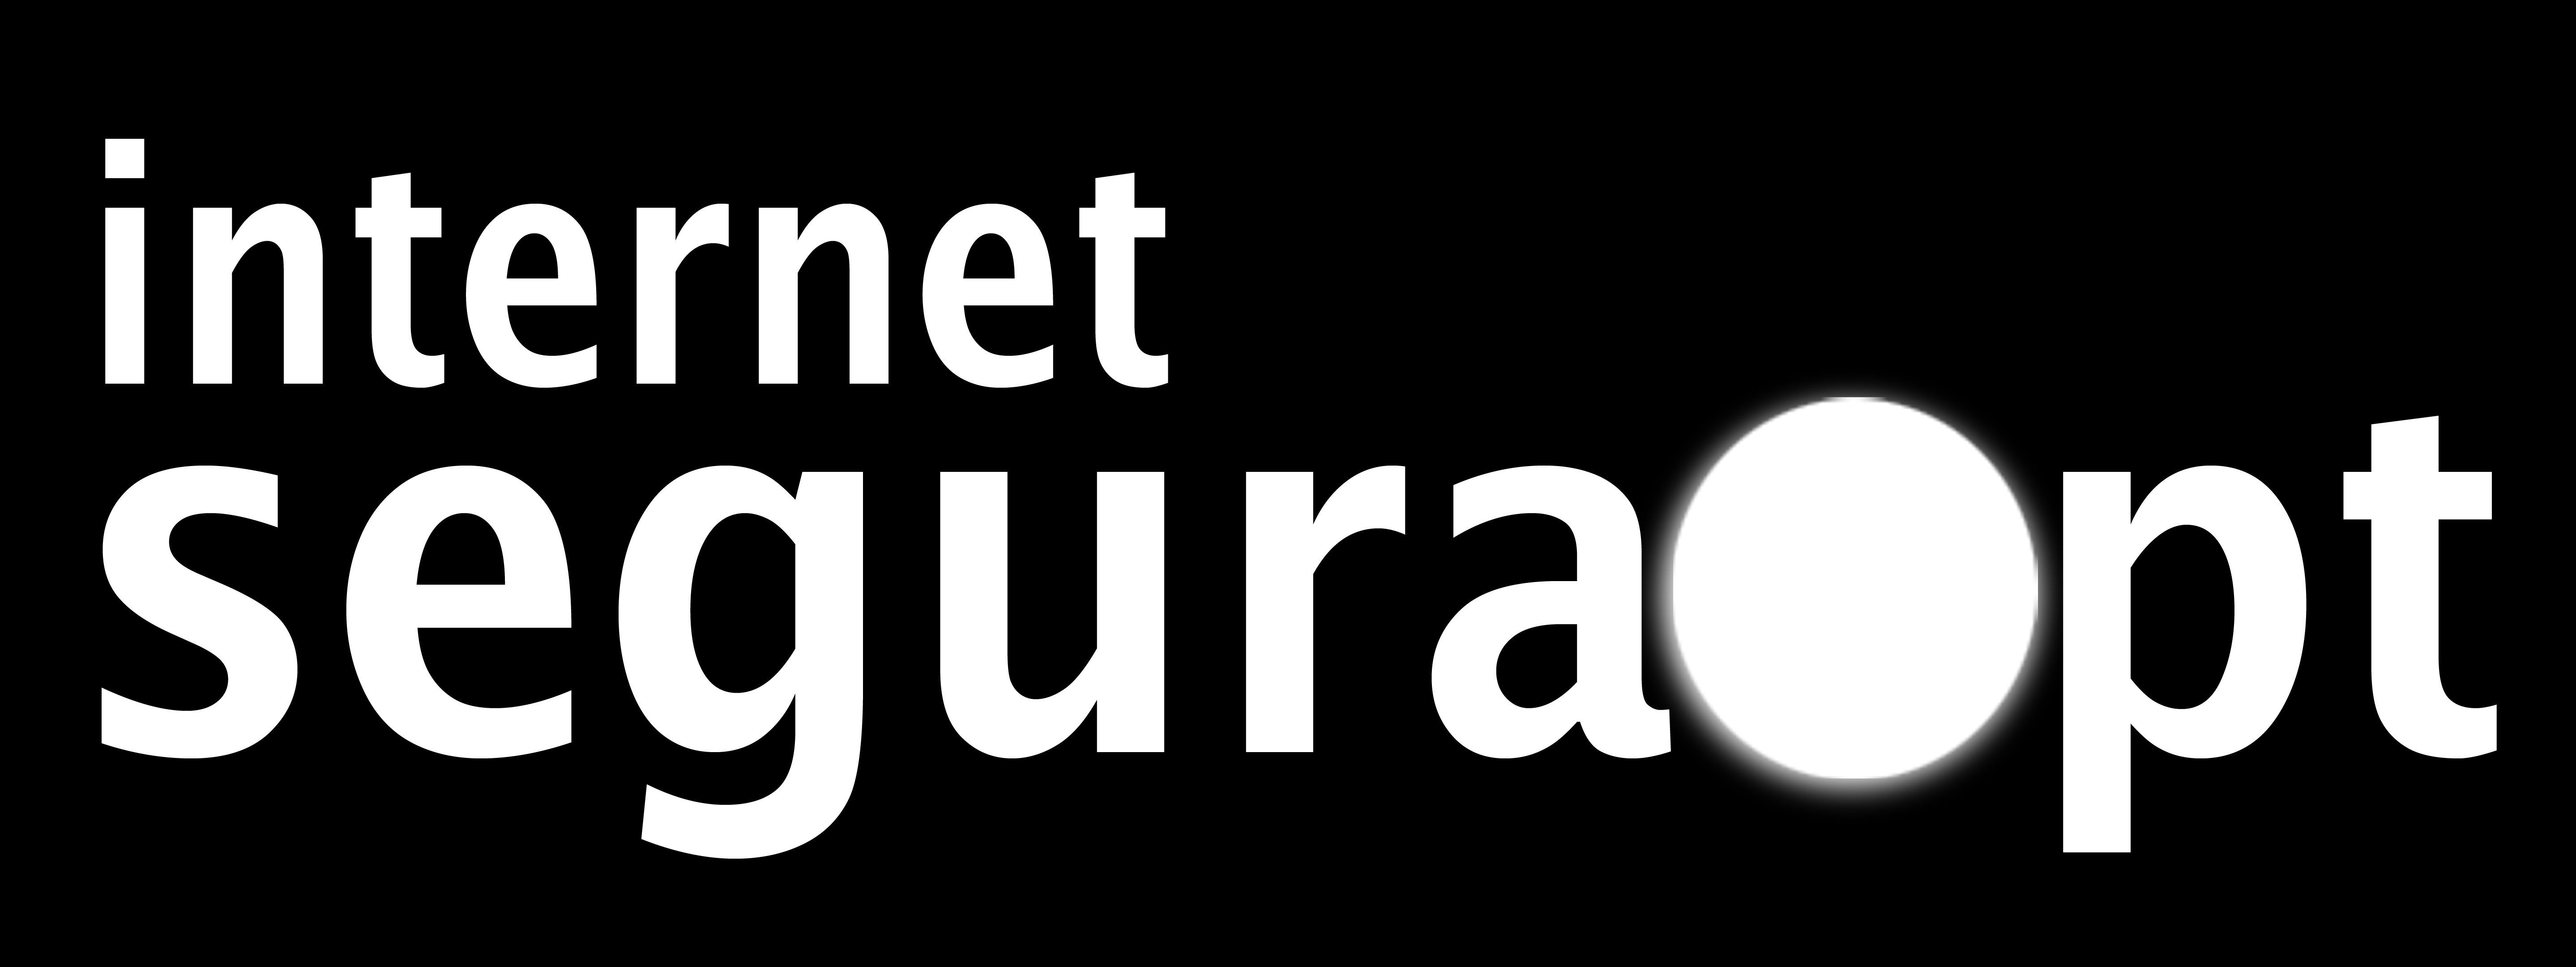 O Centro Internet Segura O Centro Internet Segura em Portugal existe para te ajudar. Temos muita informação que disponibilizamos sobre todos os riscos que se podem encontrar online.